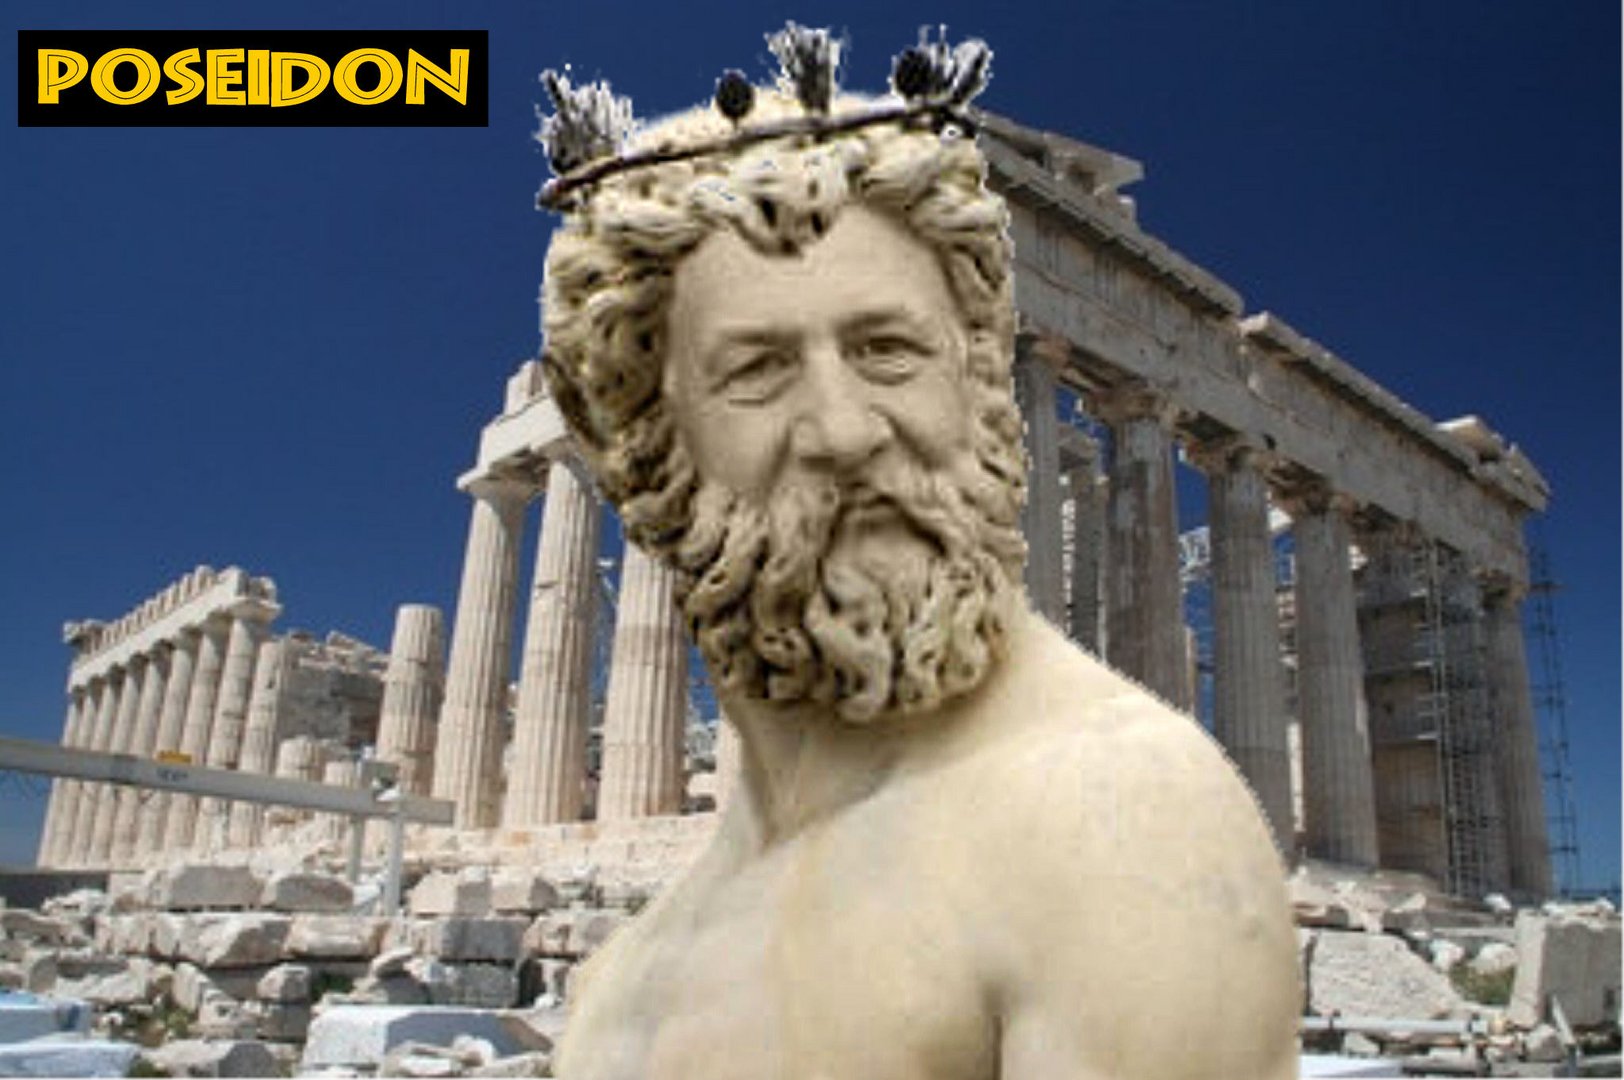 Poseidon (Selbstportrait - Fotomontage)